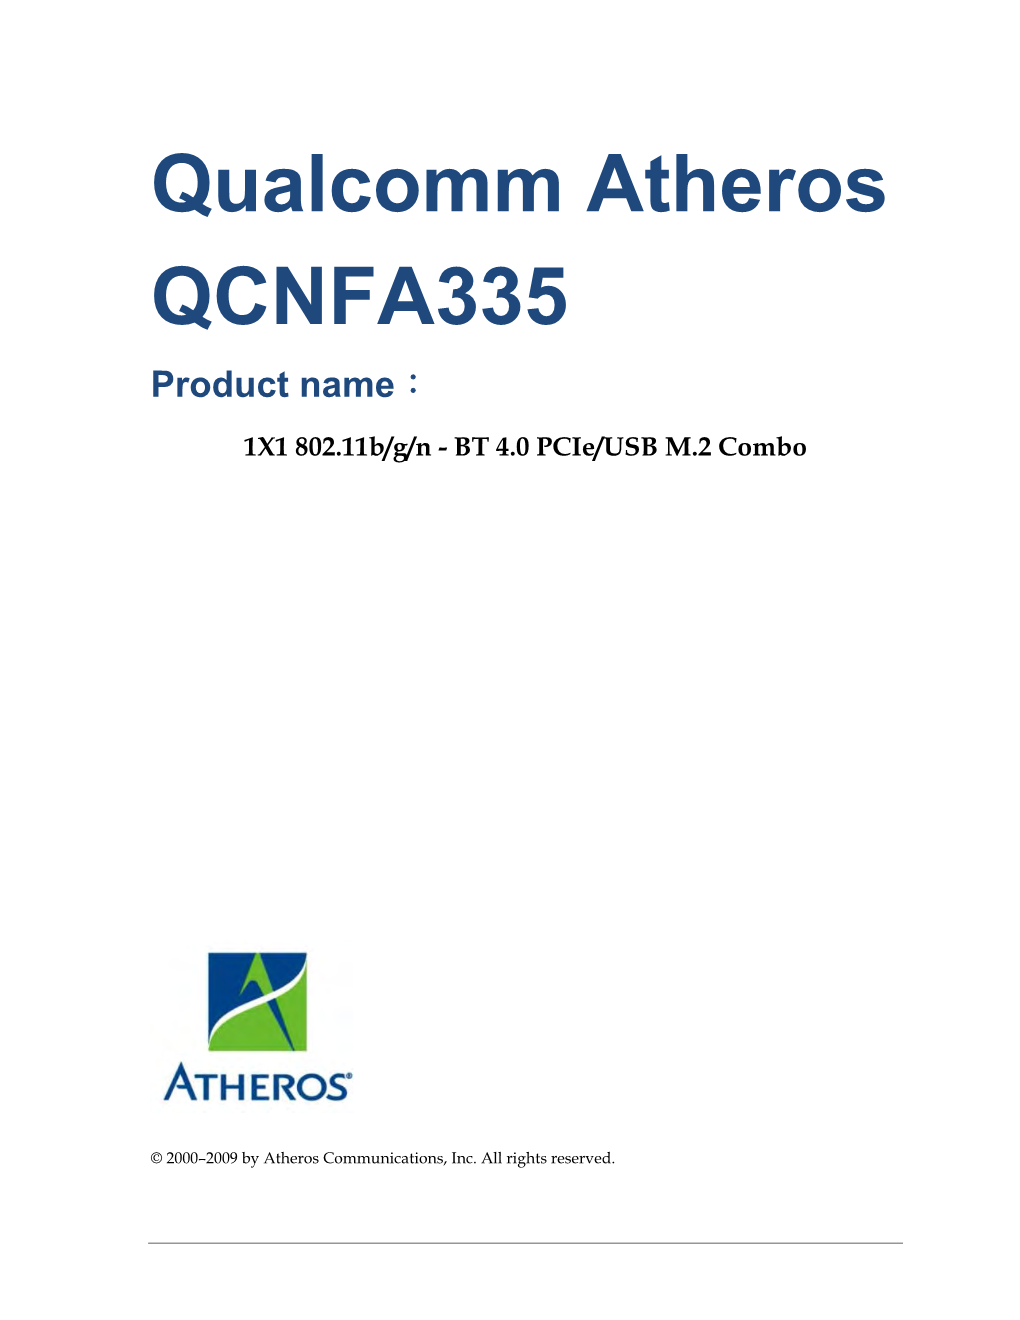 Qualcomm Atheros QCNFA335 Product Name：